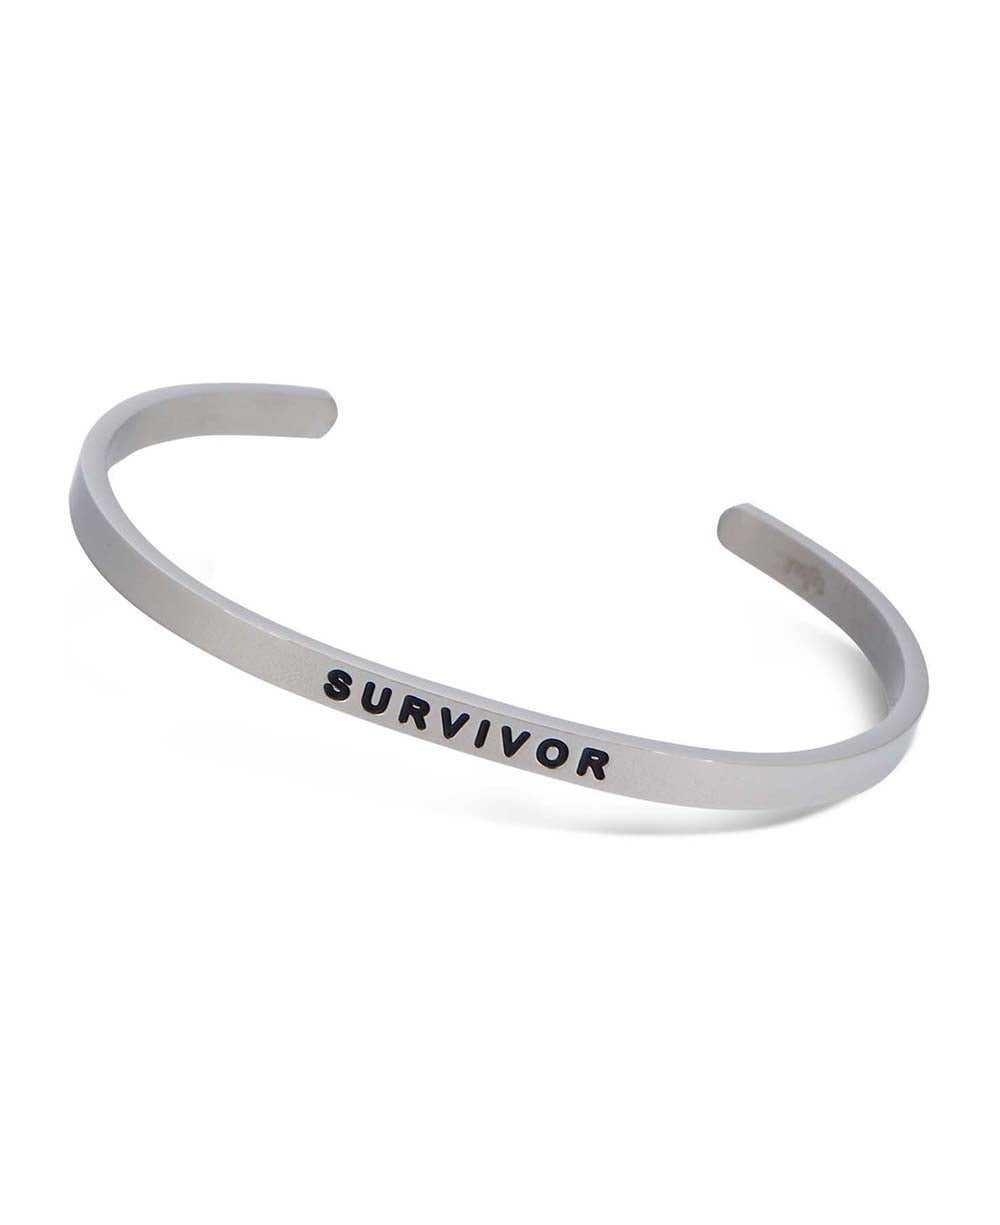 Inspirational Cuff Bracelet, Survivor - Bracelets